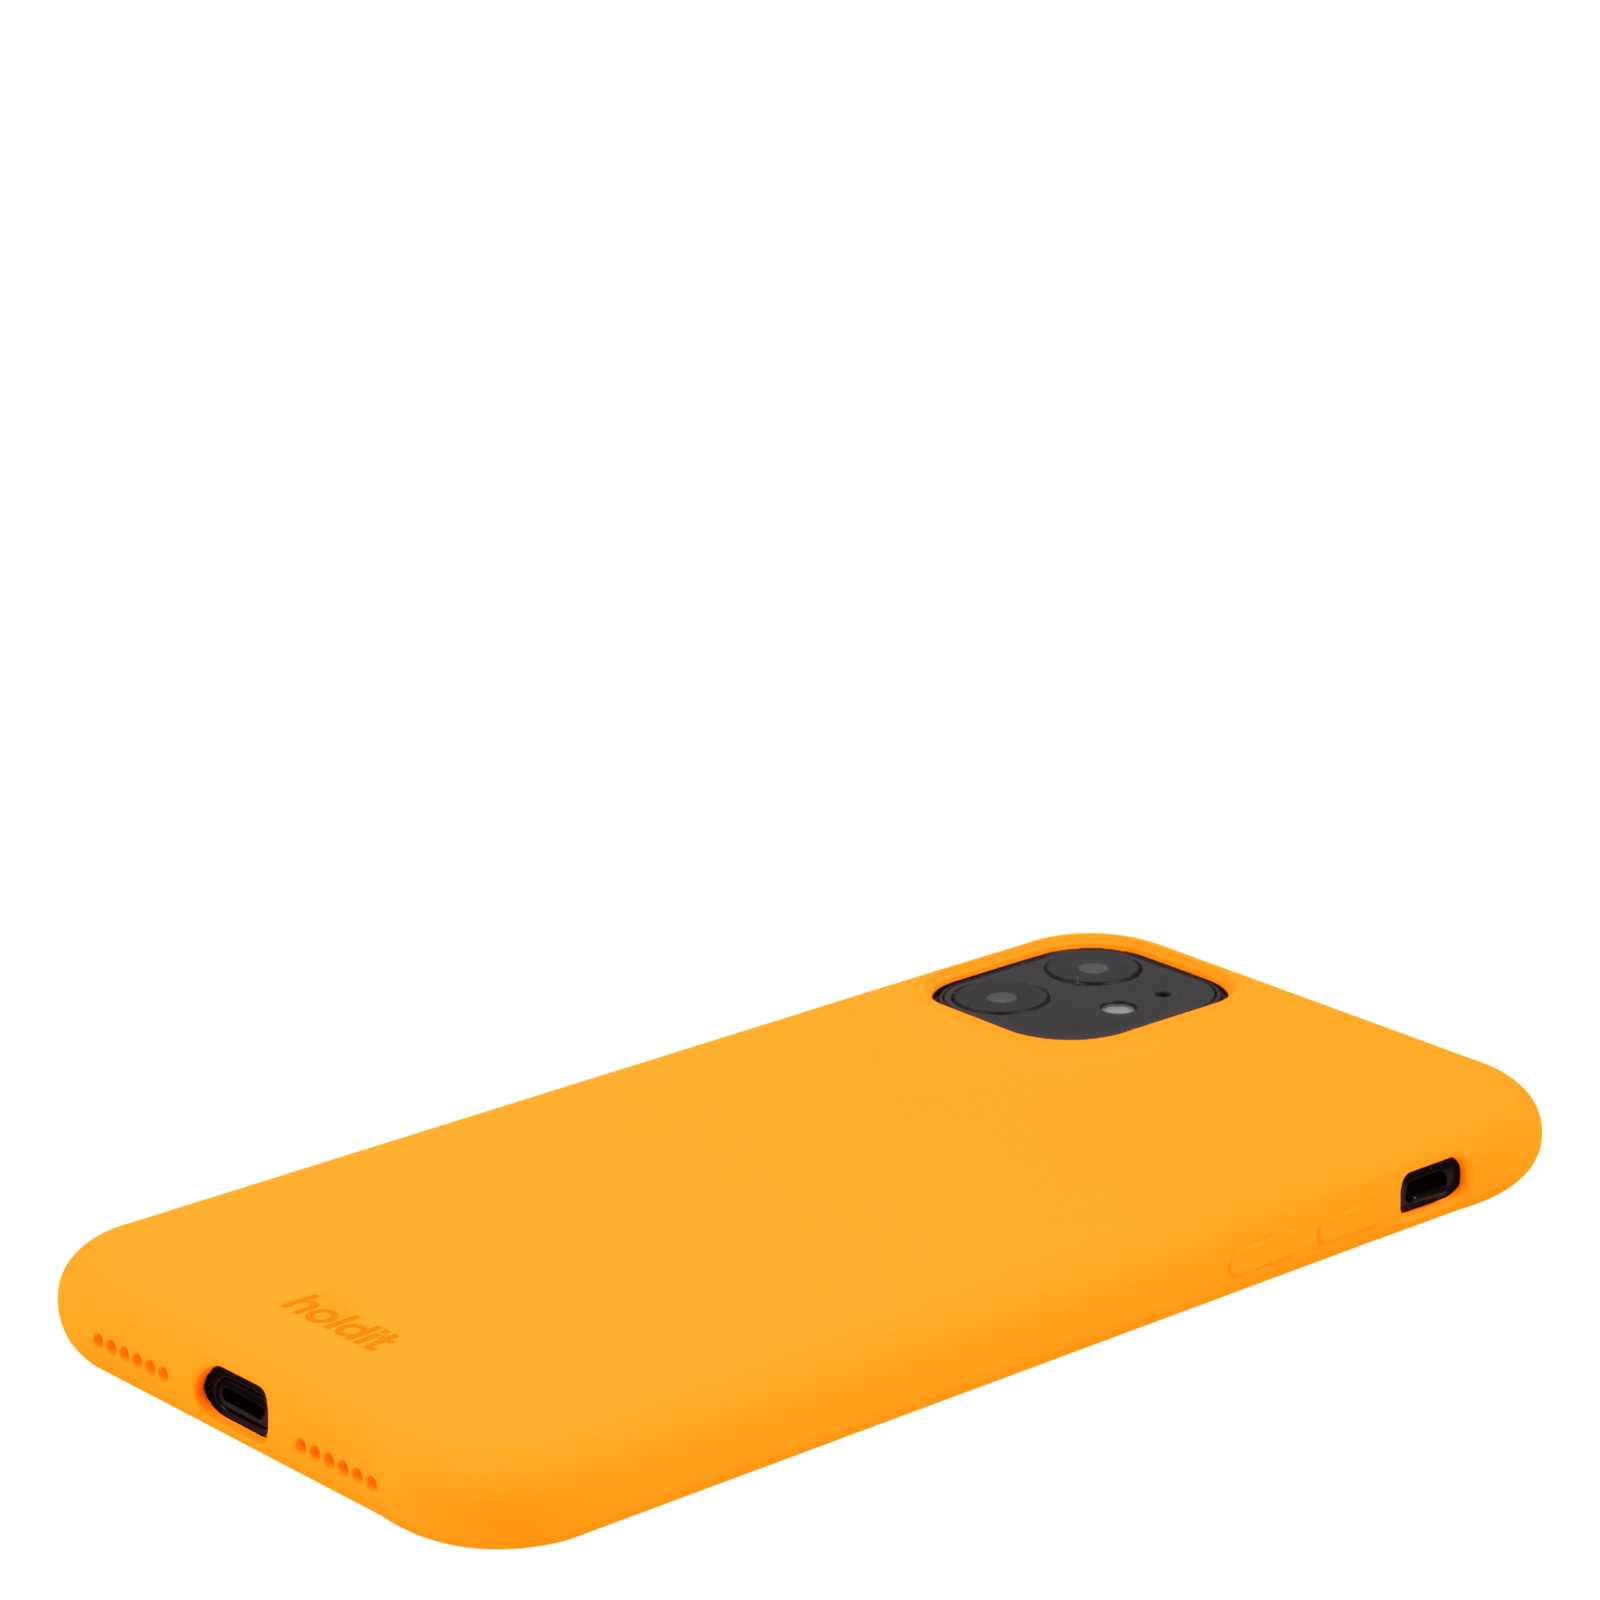 Гръб Holdit Silicone Case за iPhone 11/XR - Orange Juice